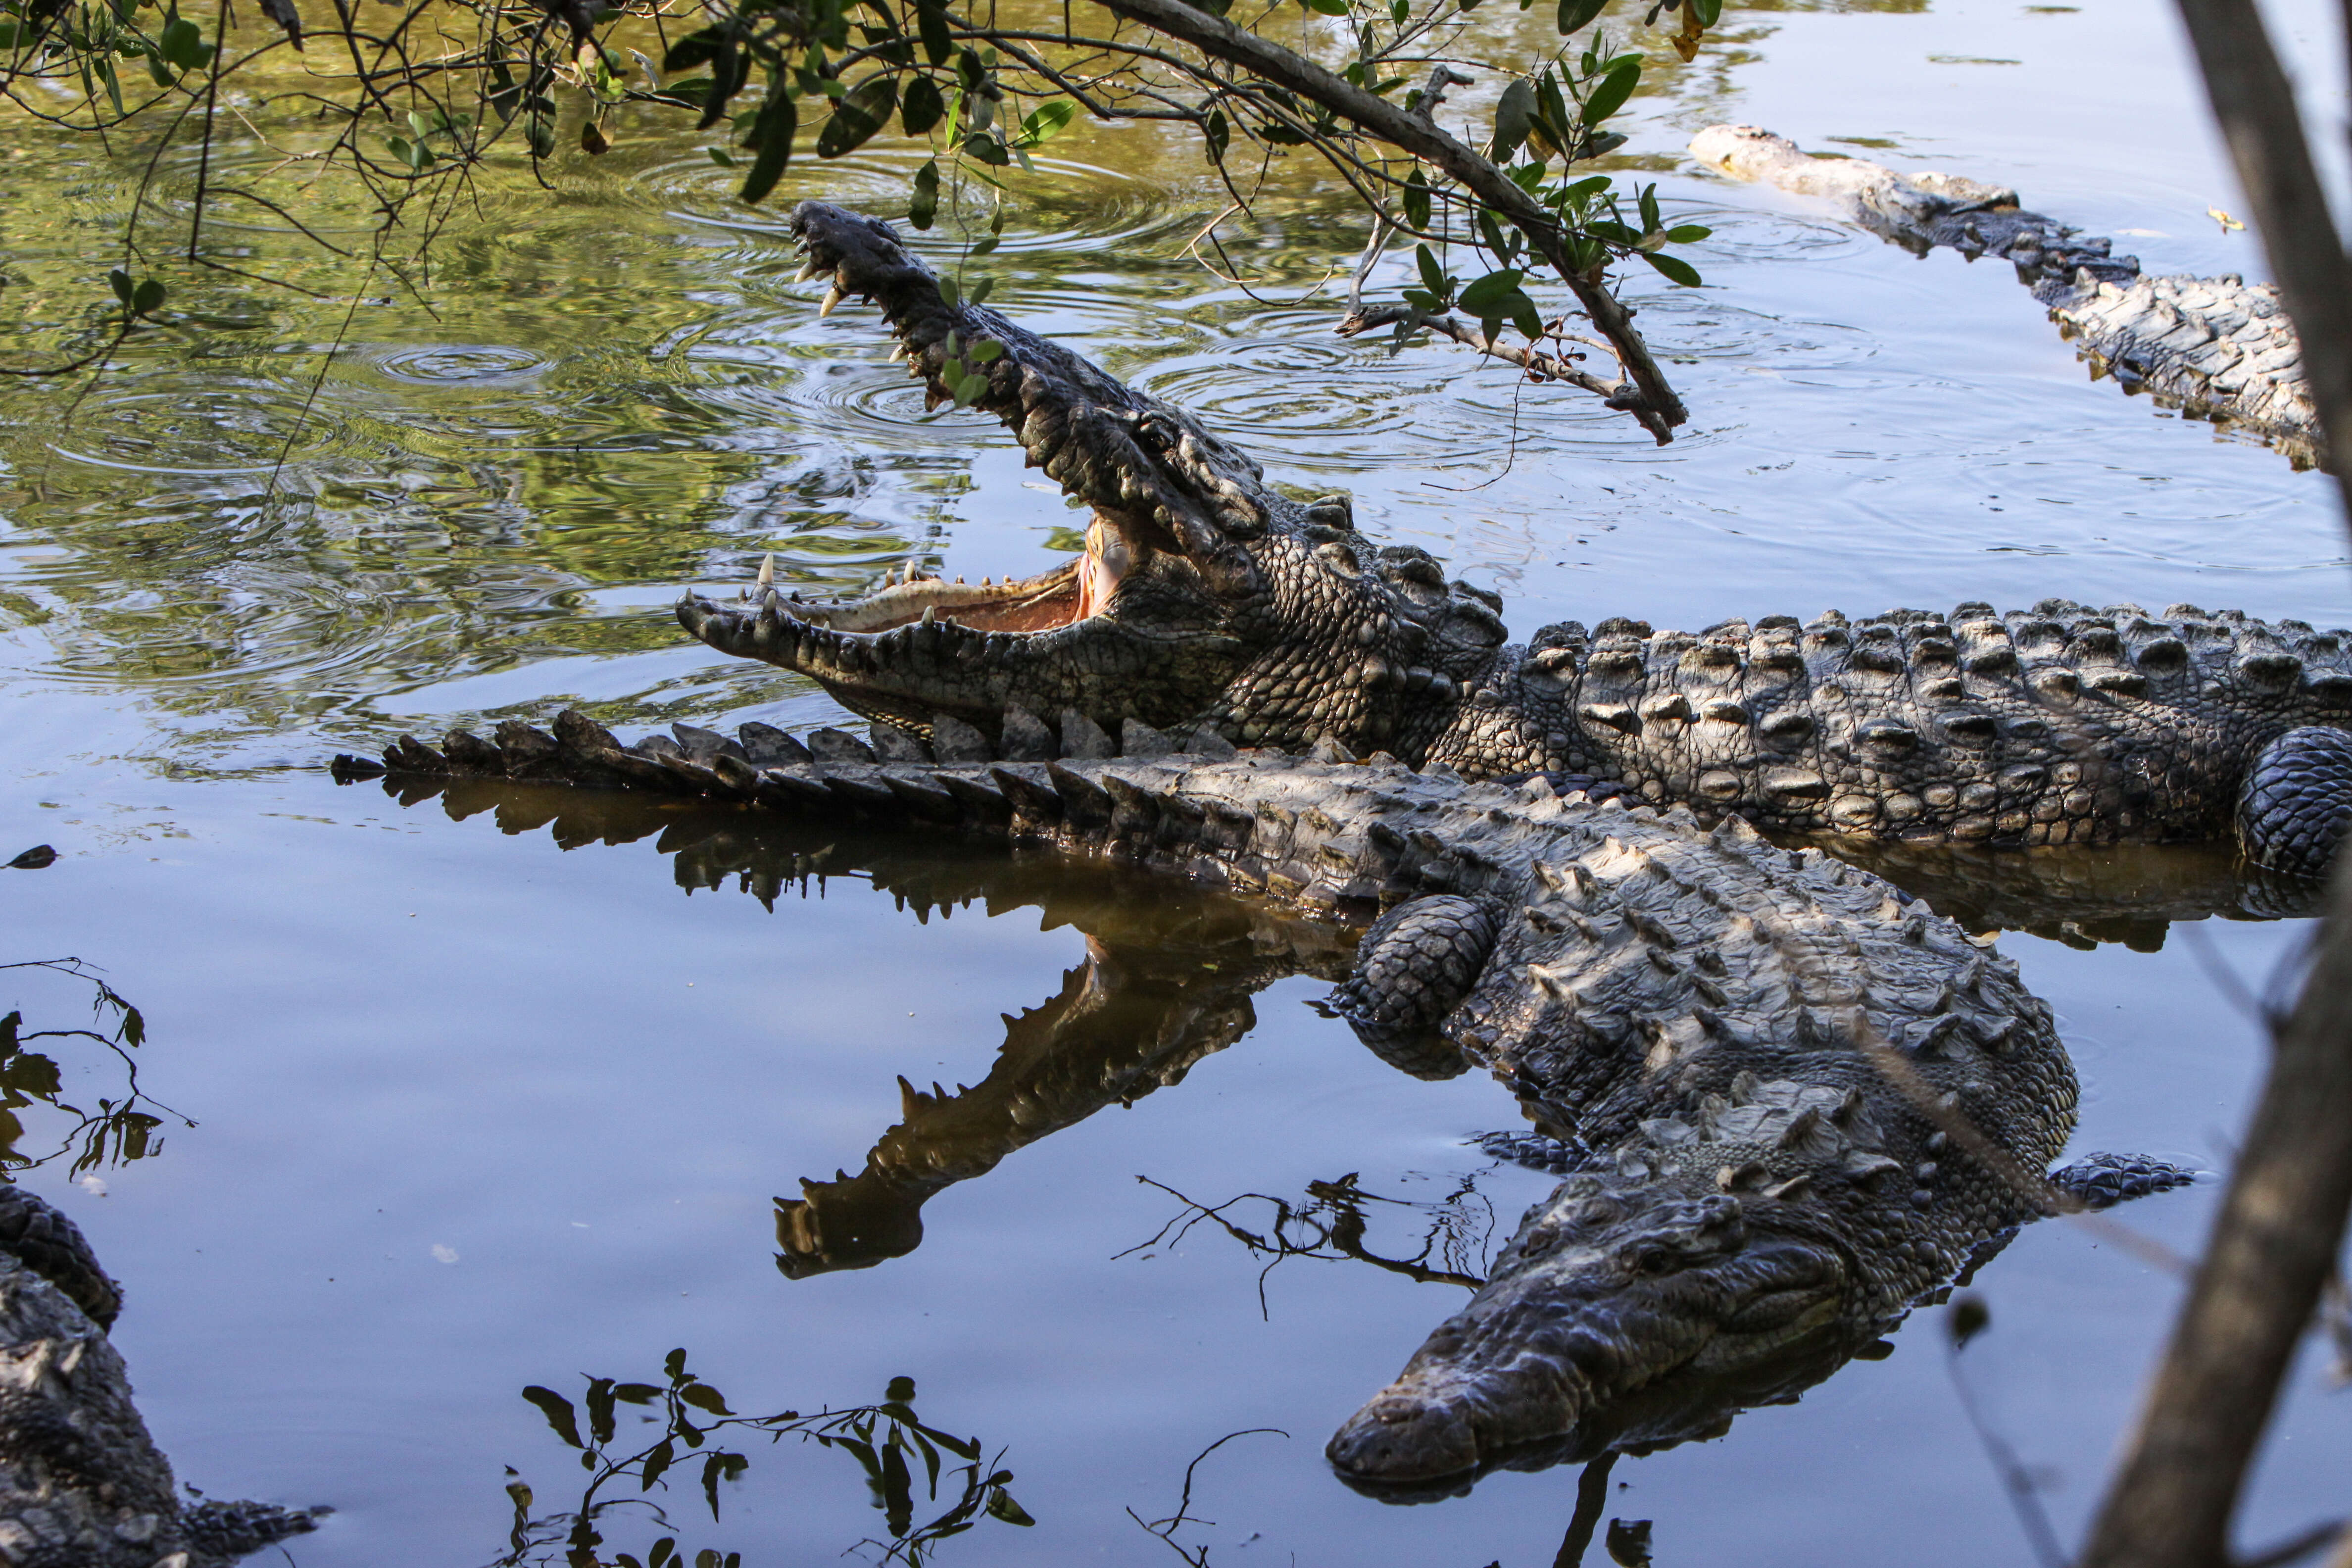 Image of American Crocodile